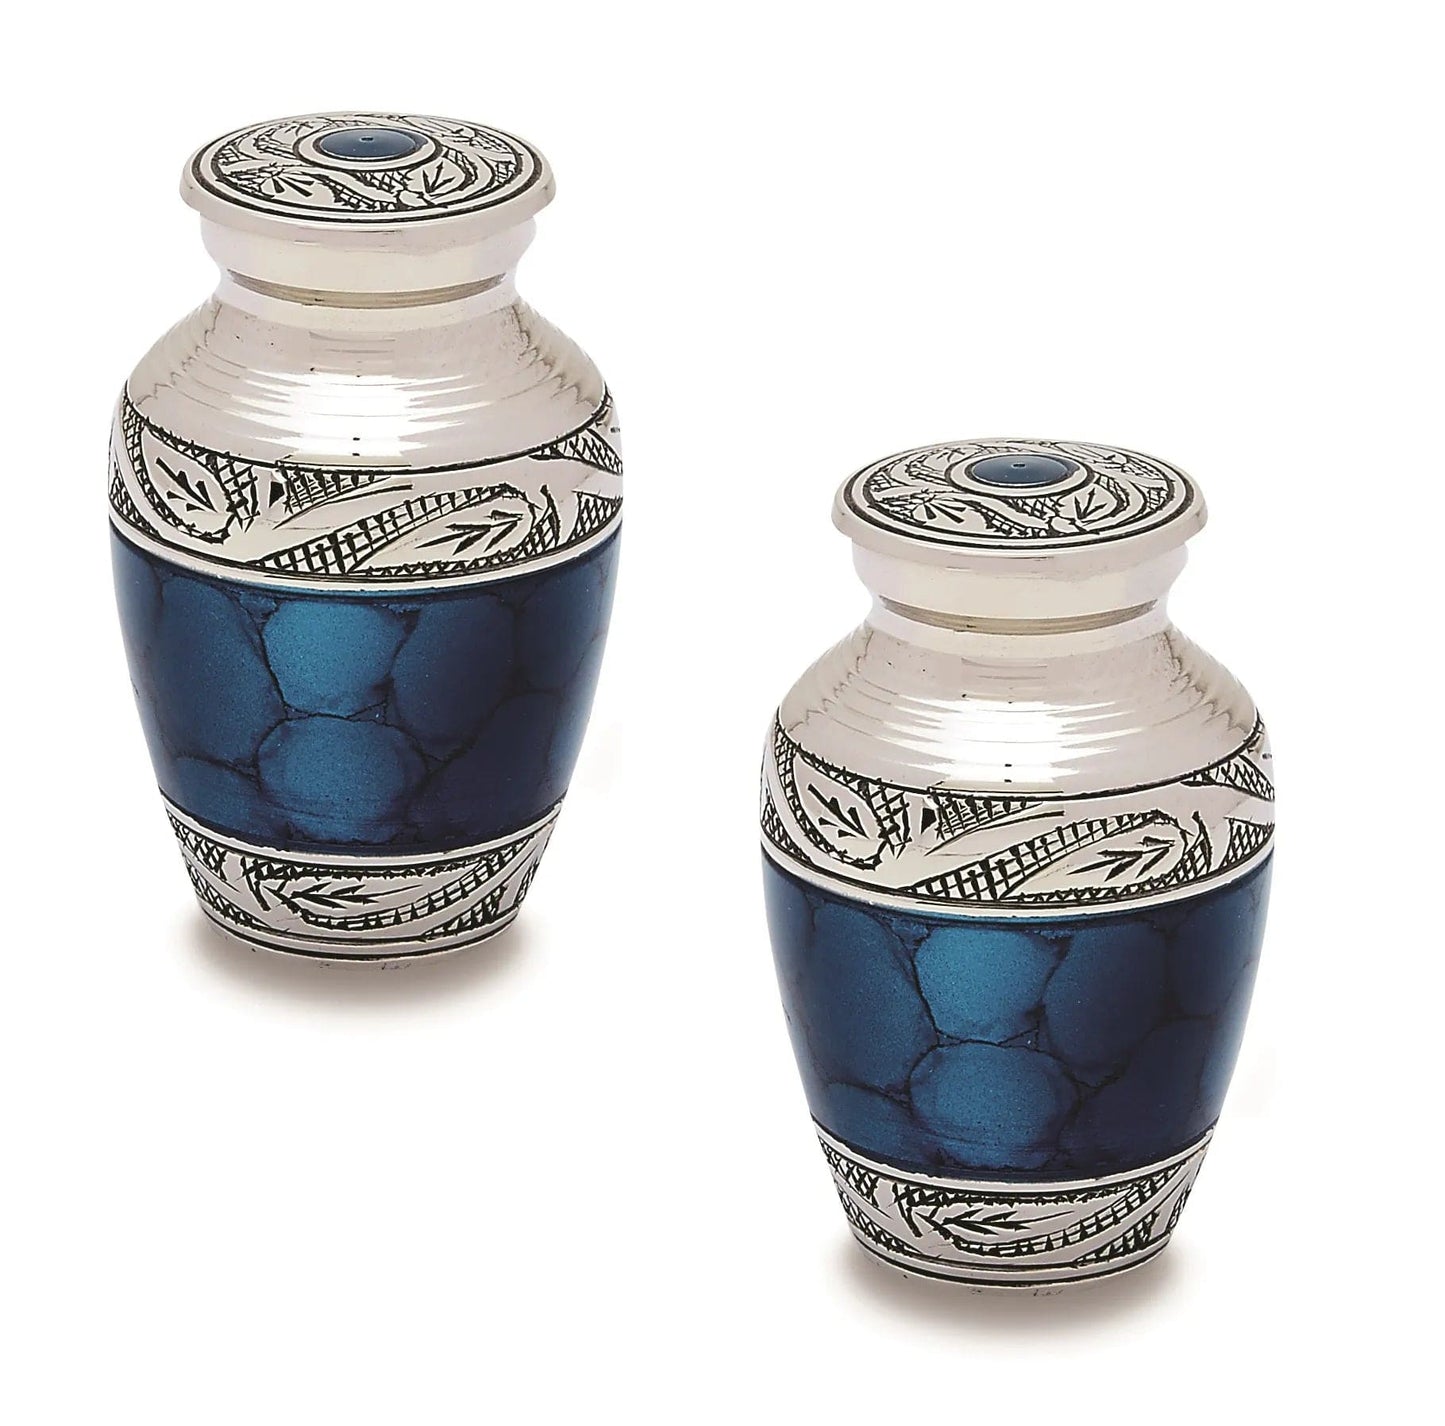 Pair of Pet Keepsake Urns - Blue | Brass Keepsake Urns